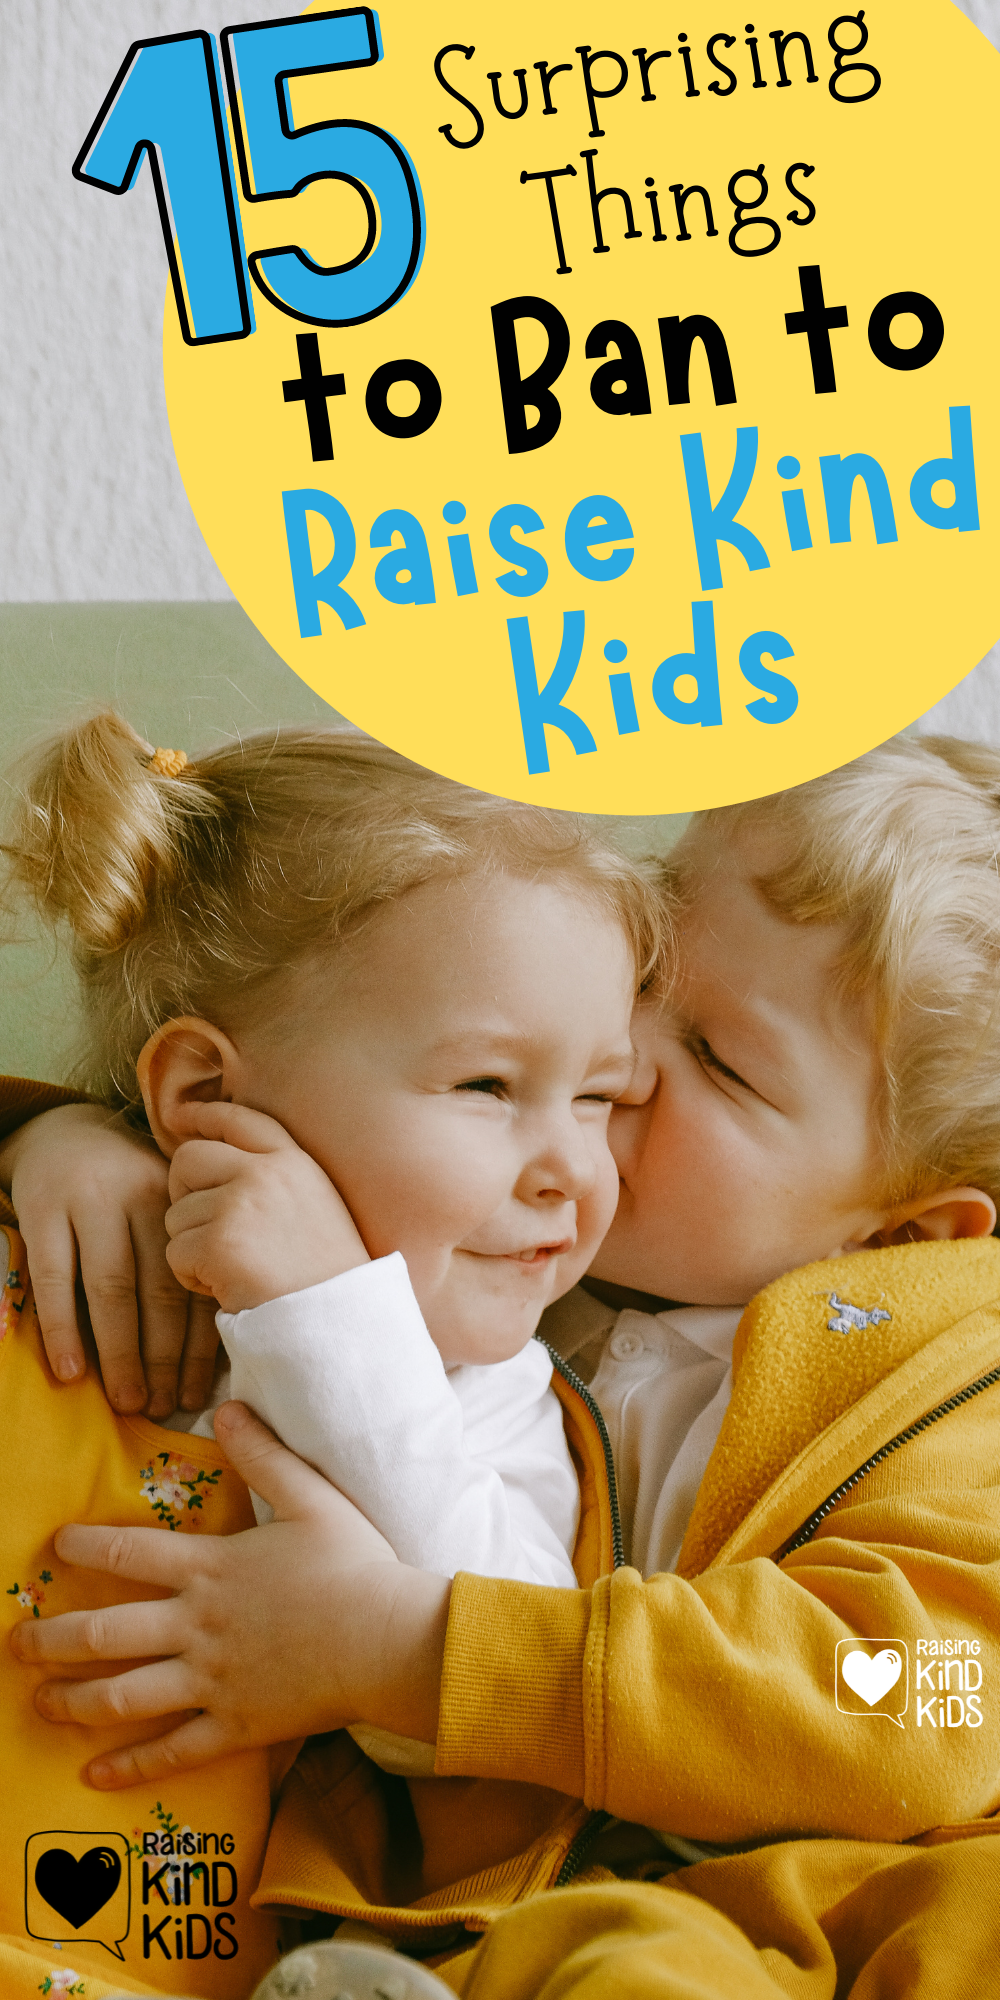 15 things to ban to raise kind kids. #kindkids #kinderkids #raisingkindkids #coffeeandcarpool #positiveparentingtips #positiveparenting